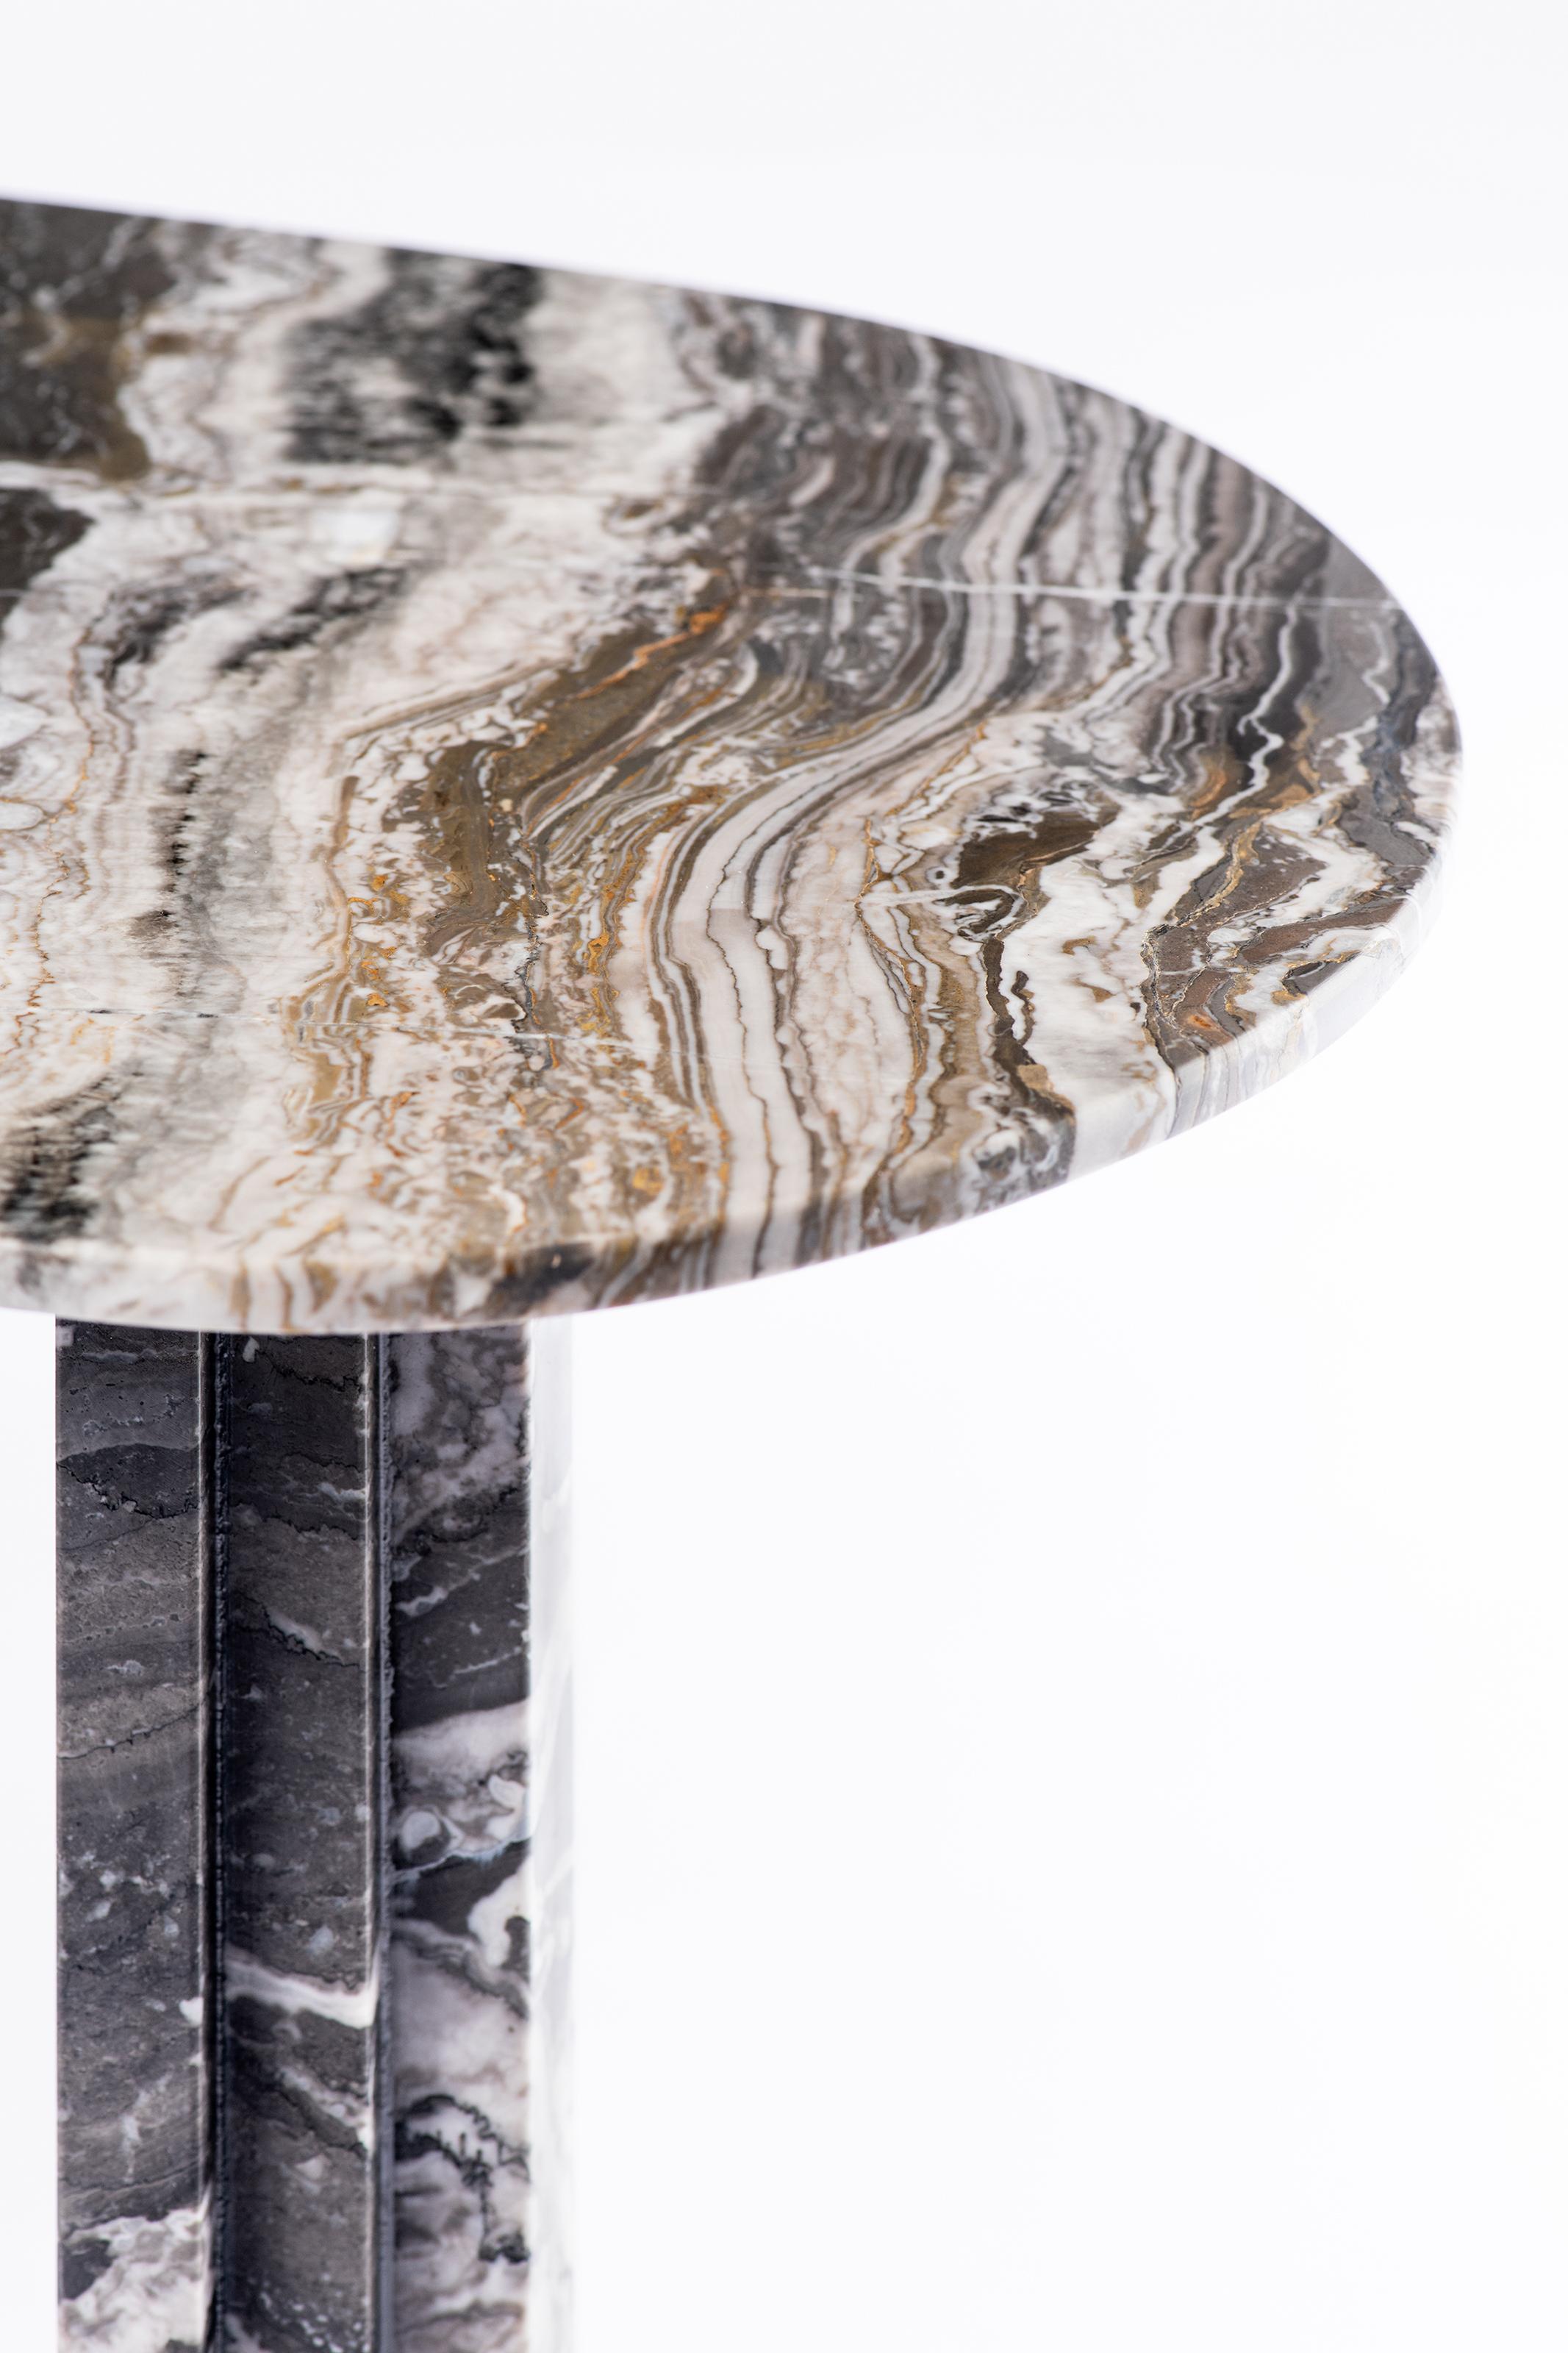 Organic Modern Sculptural Marble Coffee Table, Lorenzo Bini